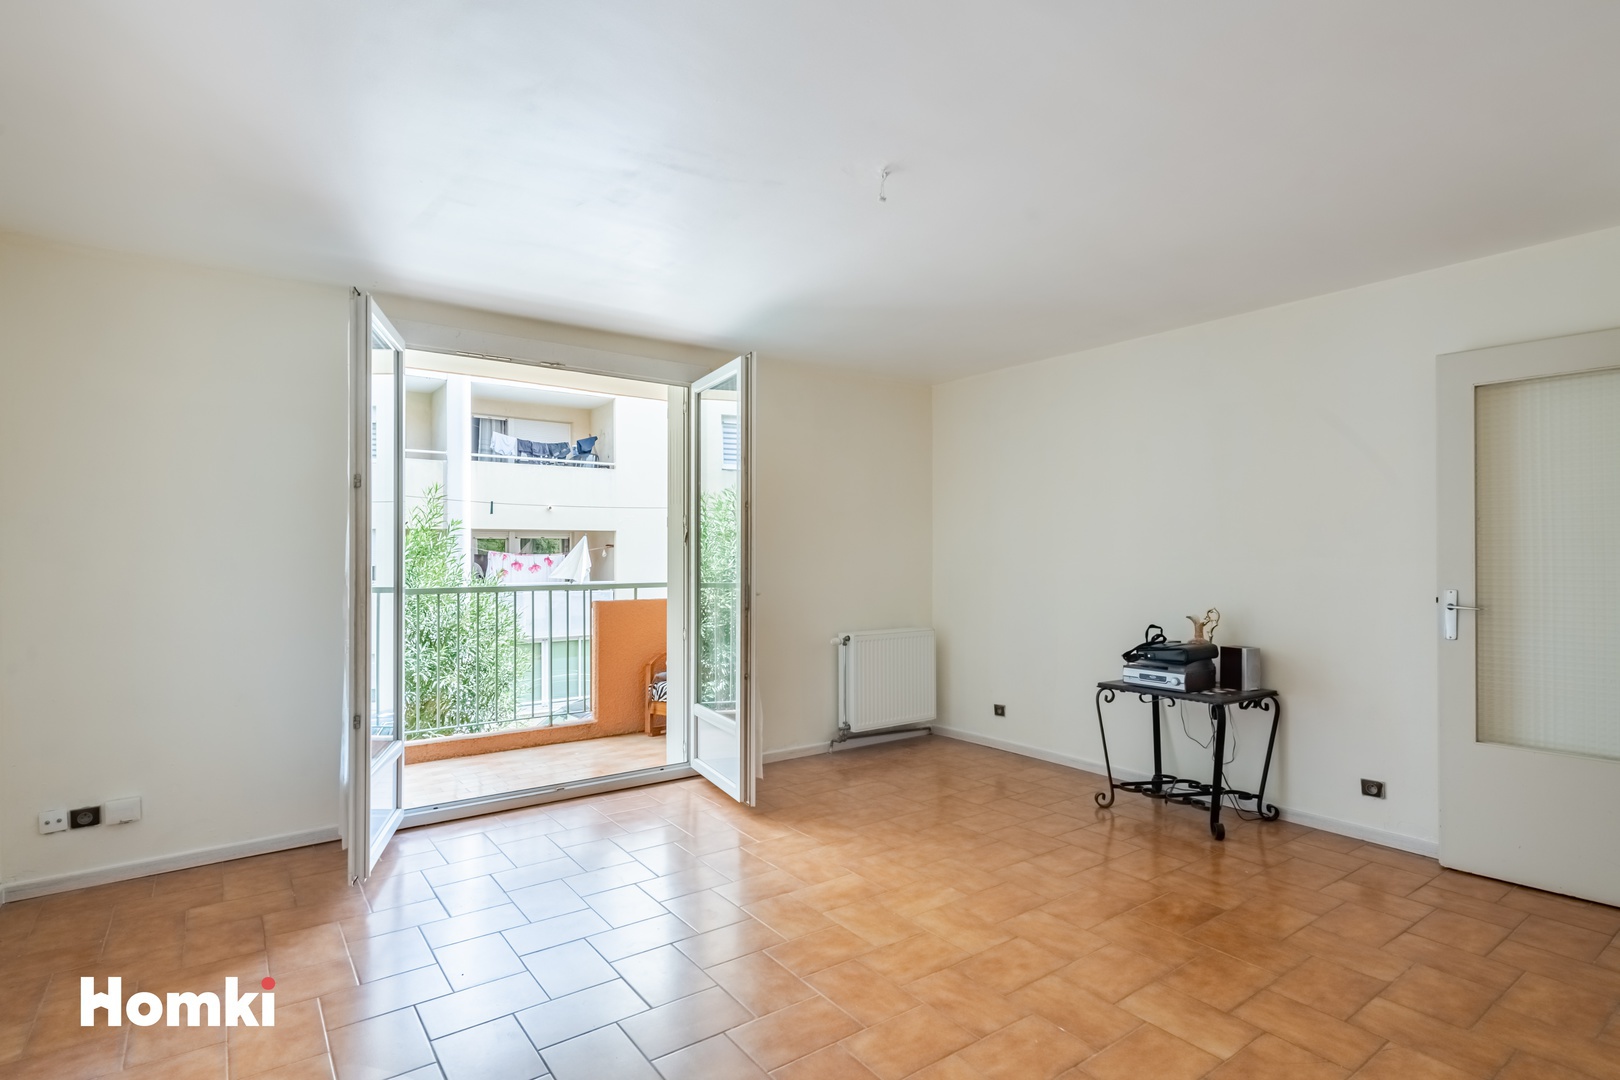 Homki - Vente Appartement  de 64.0 m² à Nîmes 30900